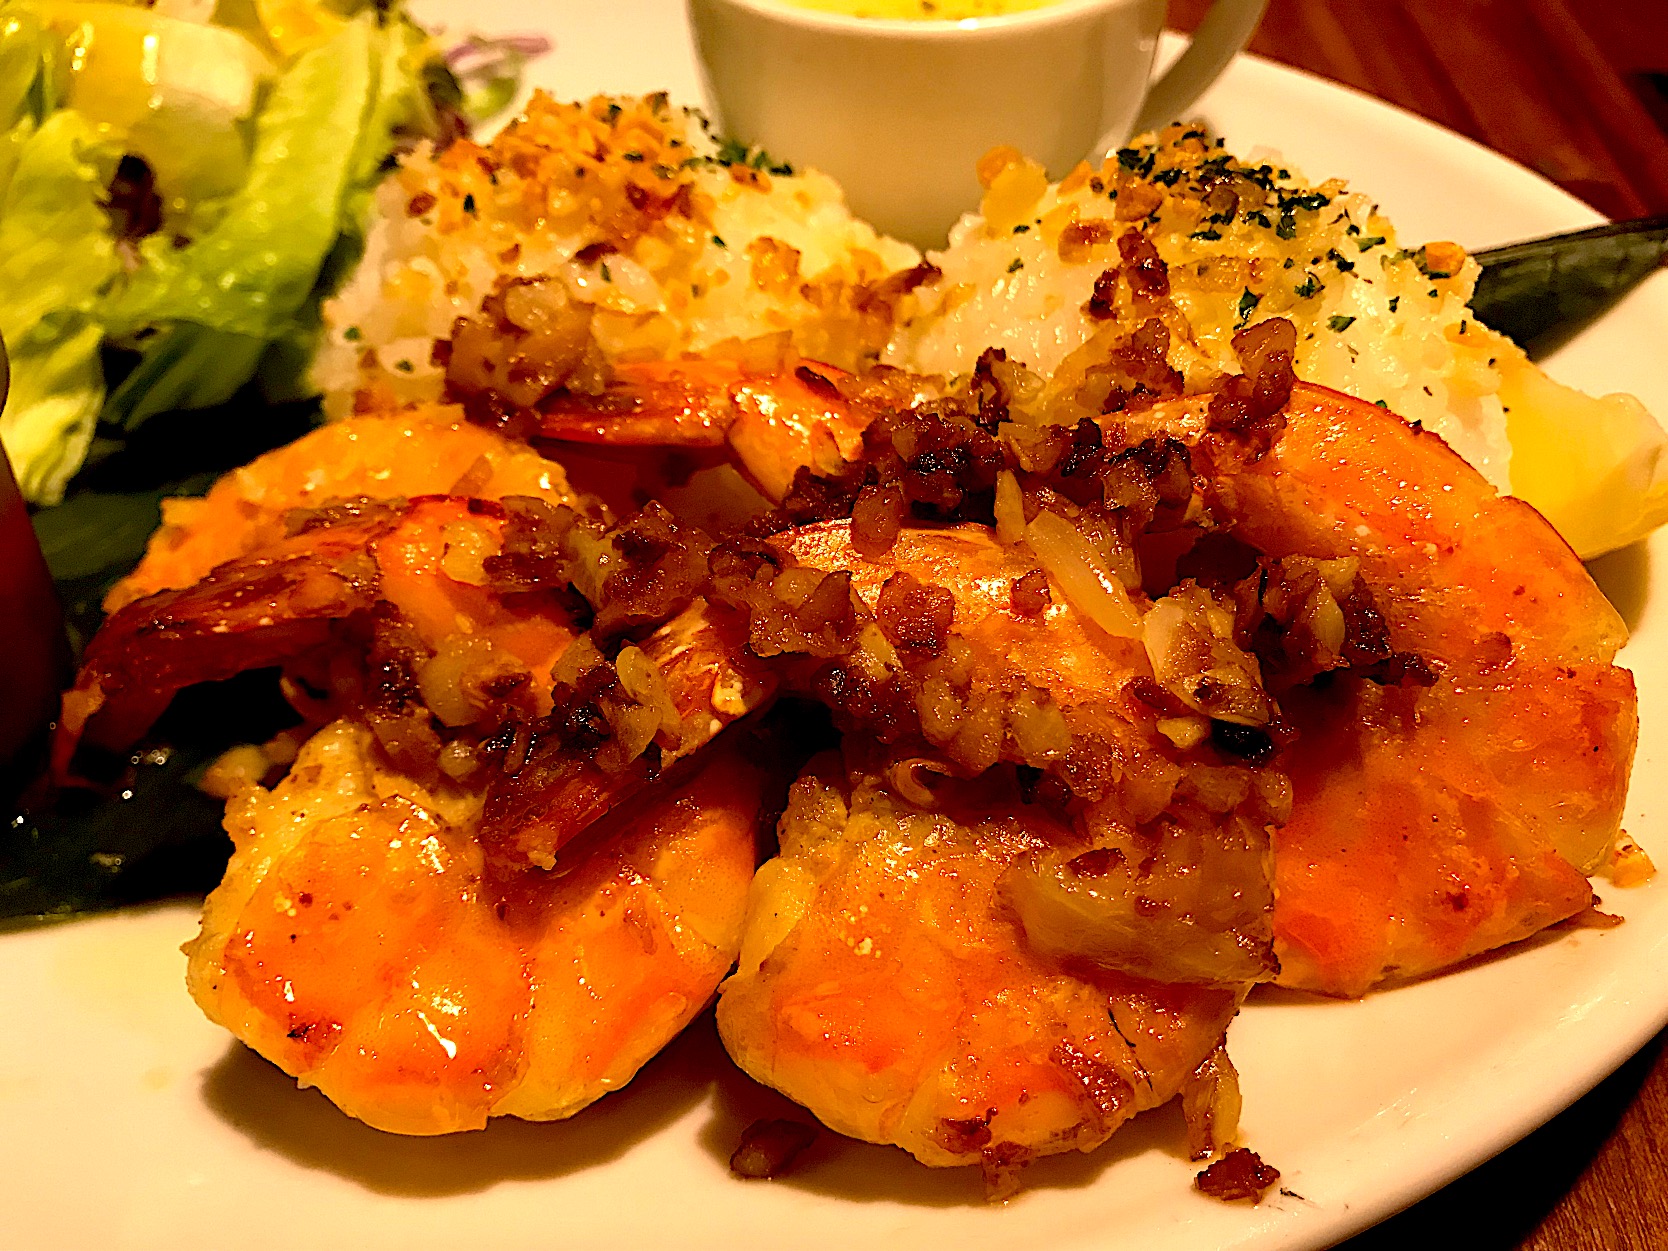 ガーリックエビ唐揚げ🦐 Fried Garlic Shrimp 🍤✨😋